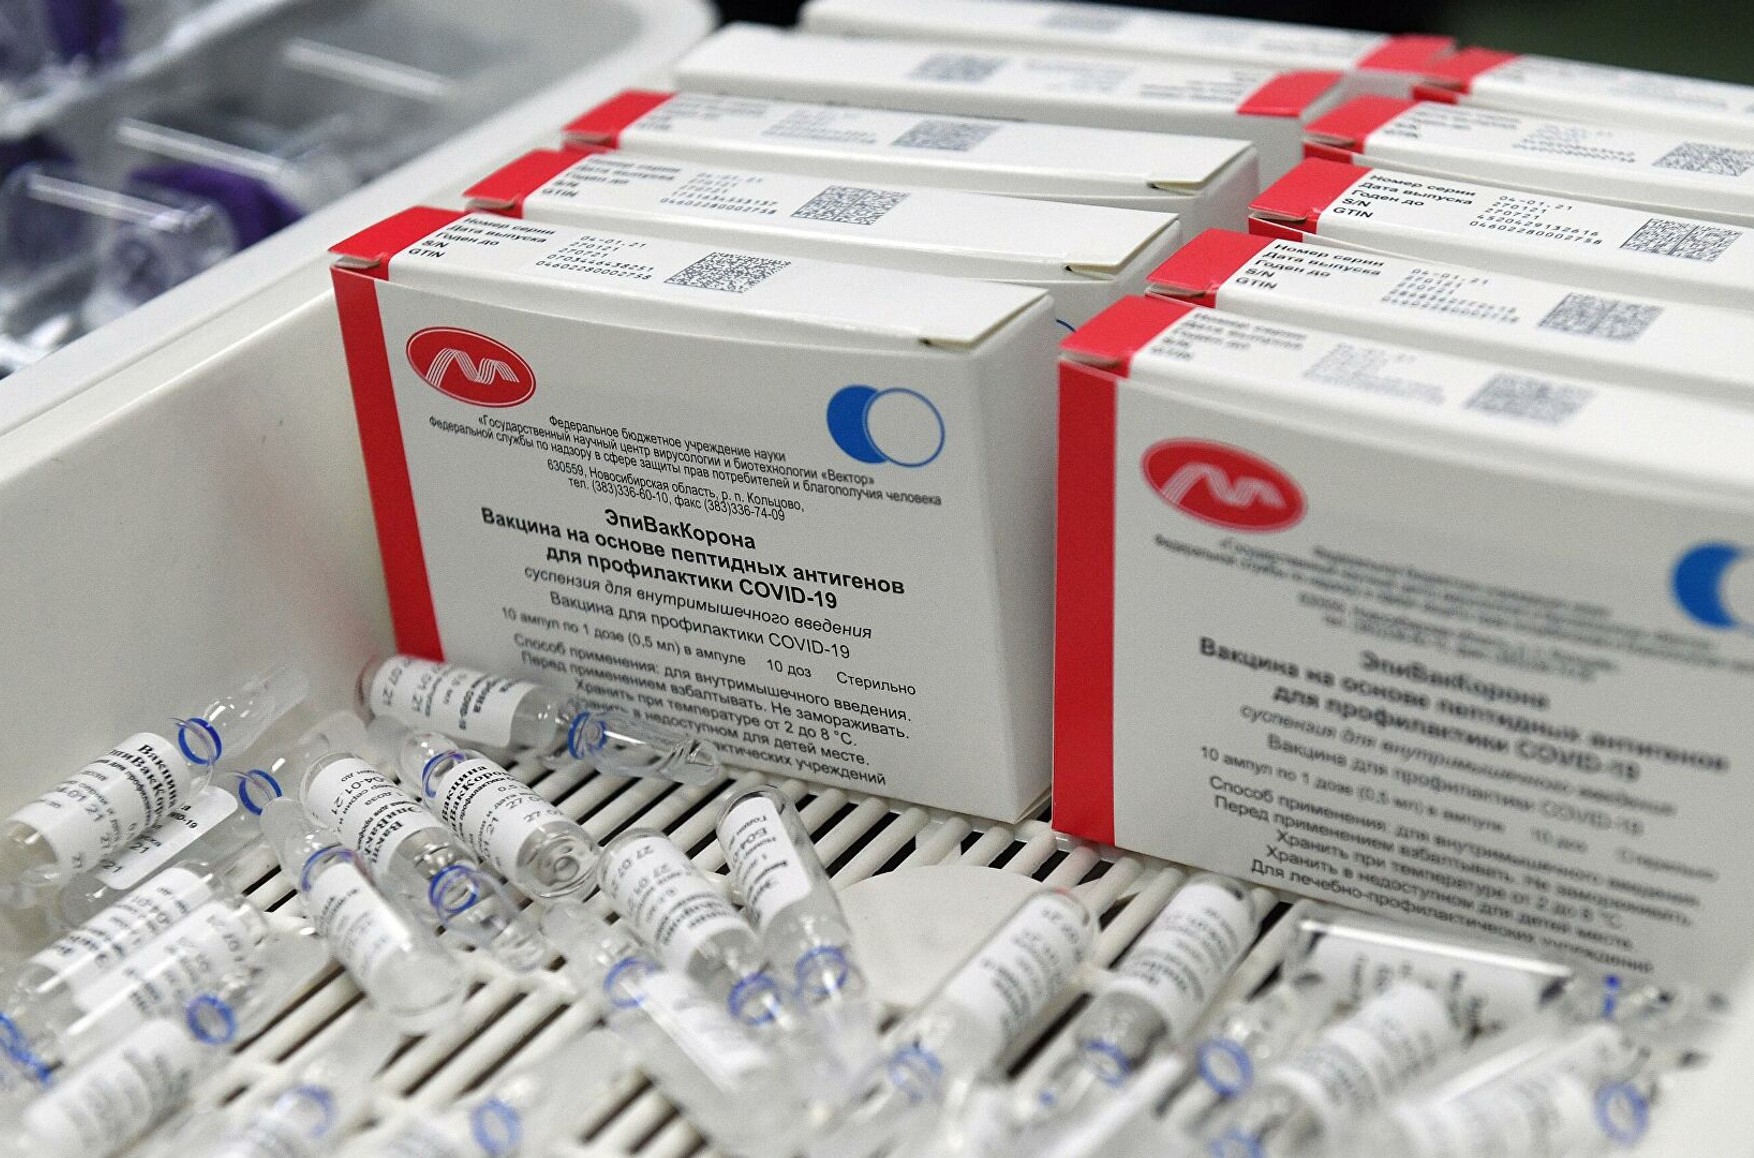 МОЗ зареєстрував п'яту за рахунком російську вакцину від коронавируса